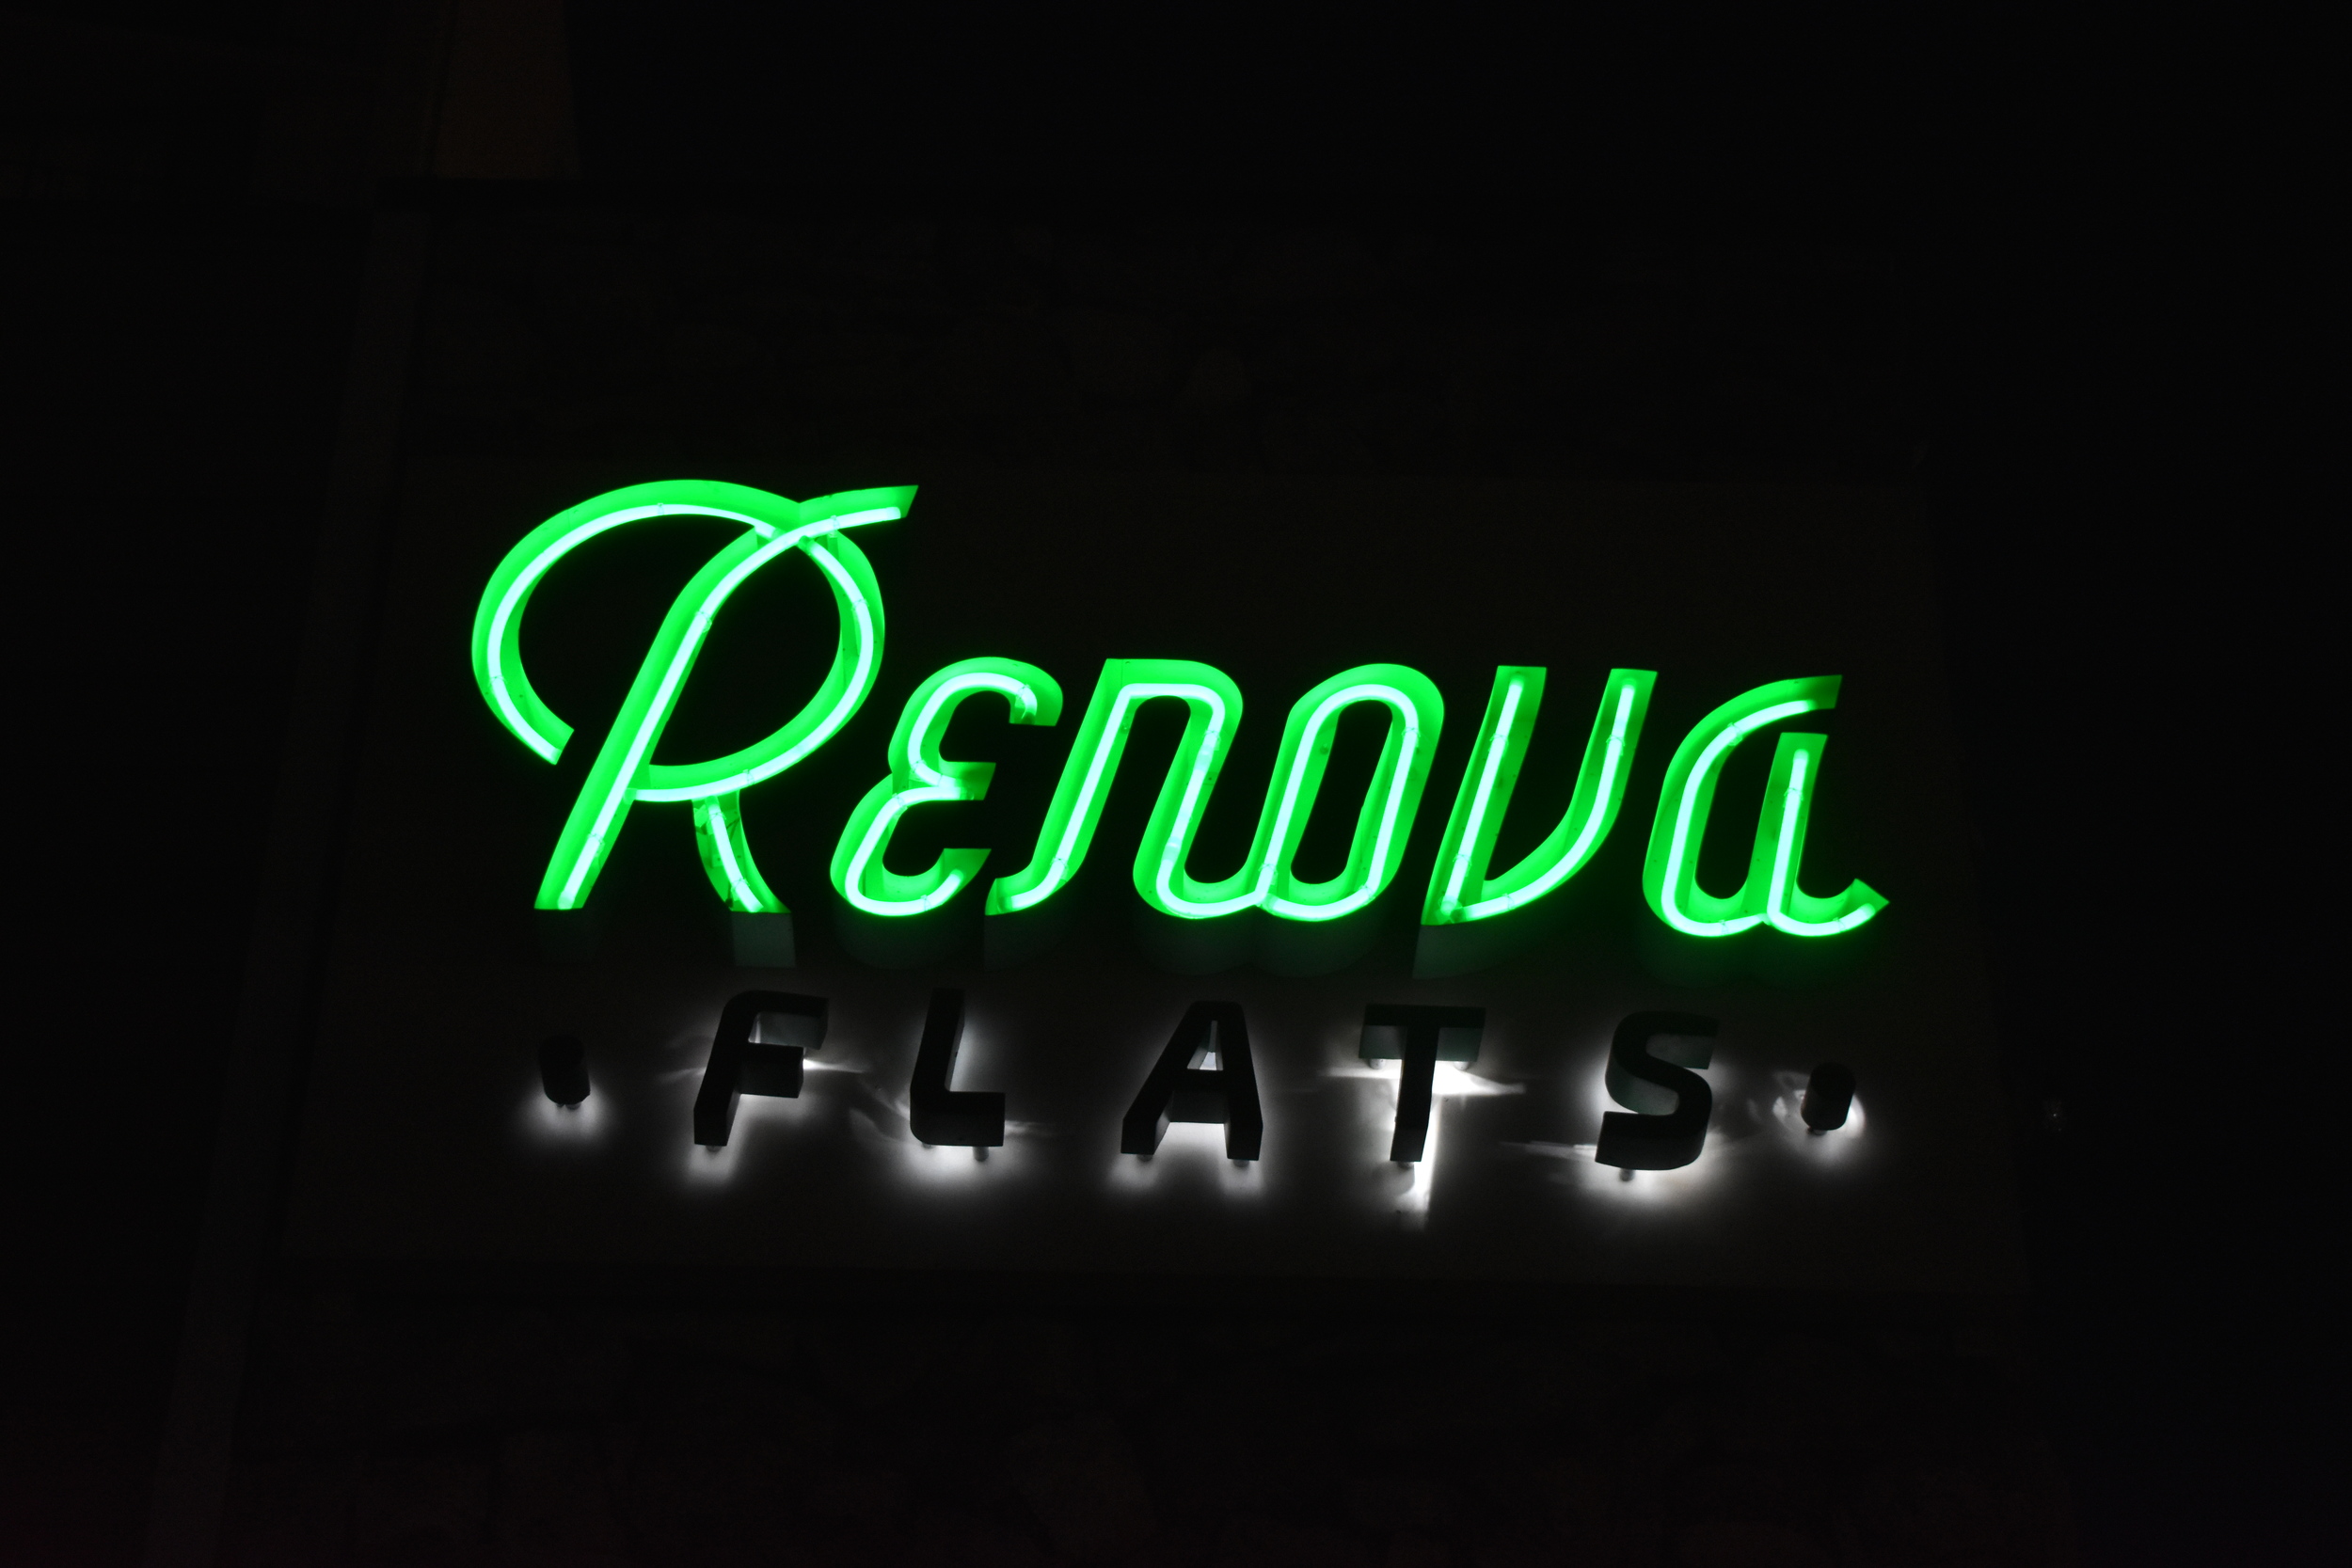 Renova Flats wall mounted sign, Reno, Nevada